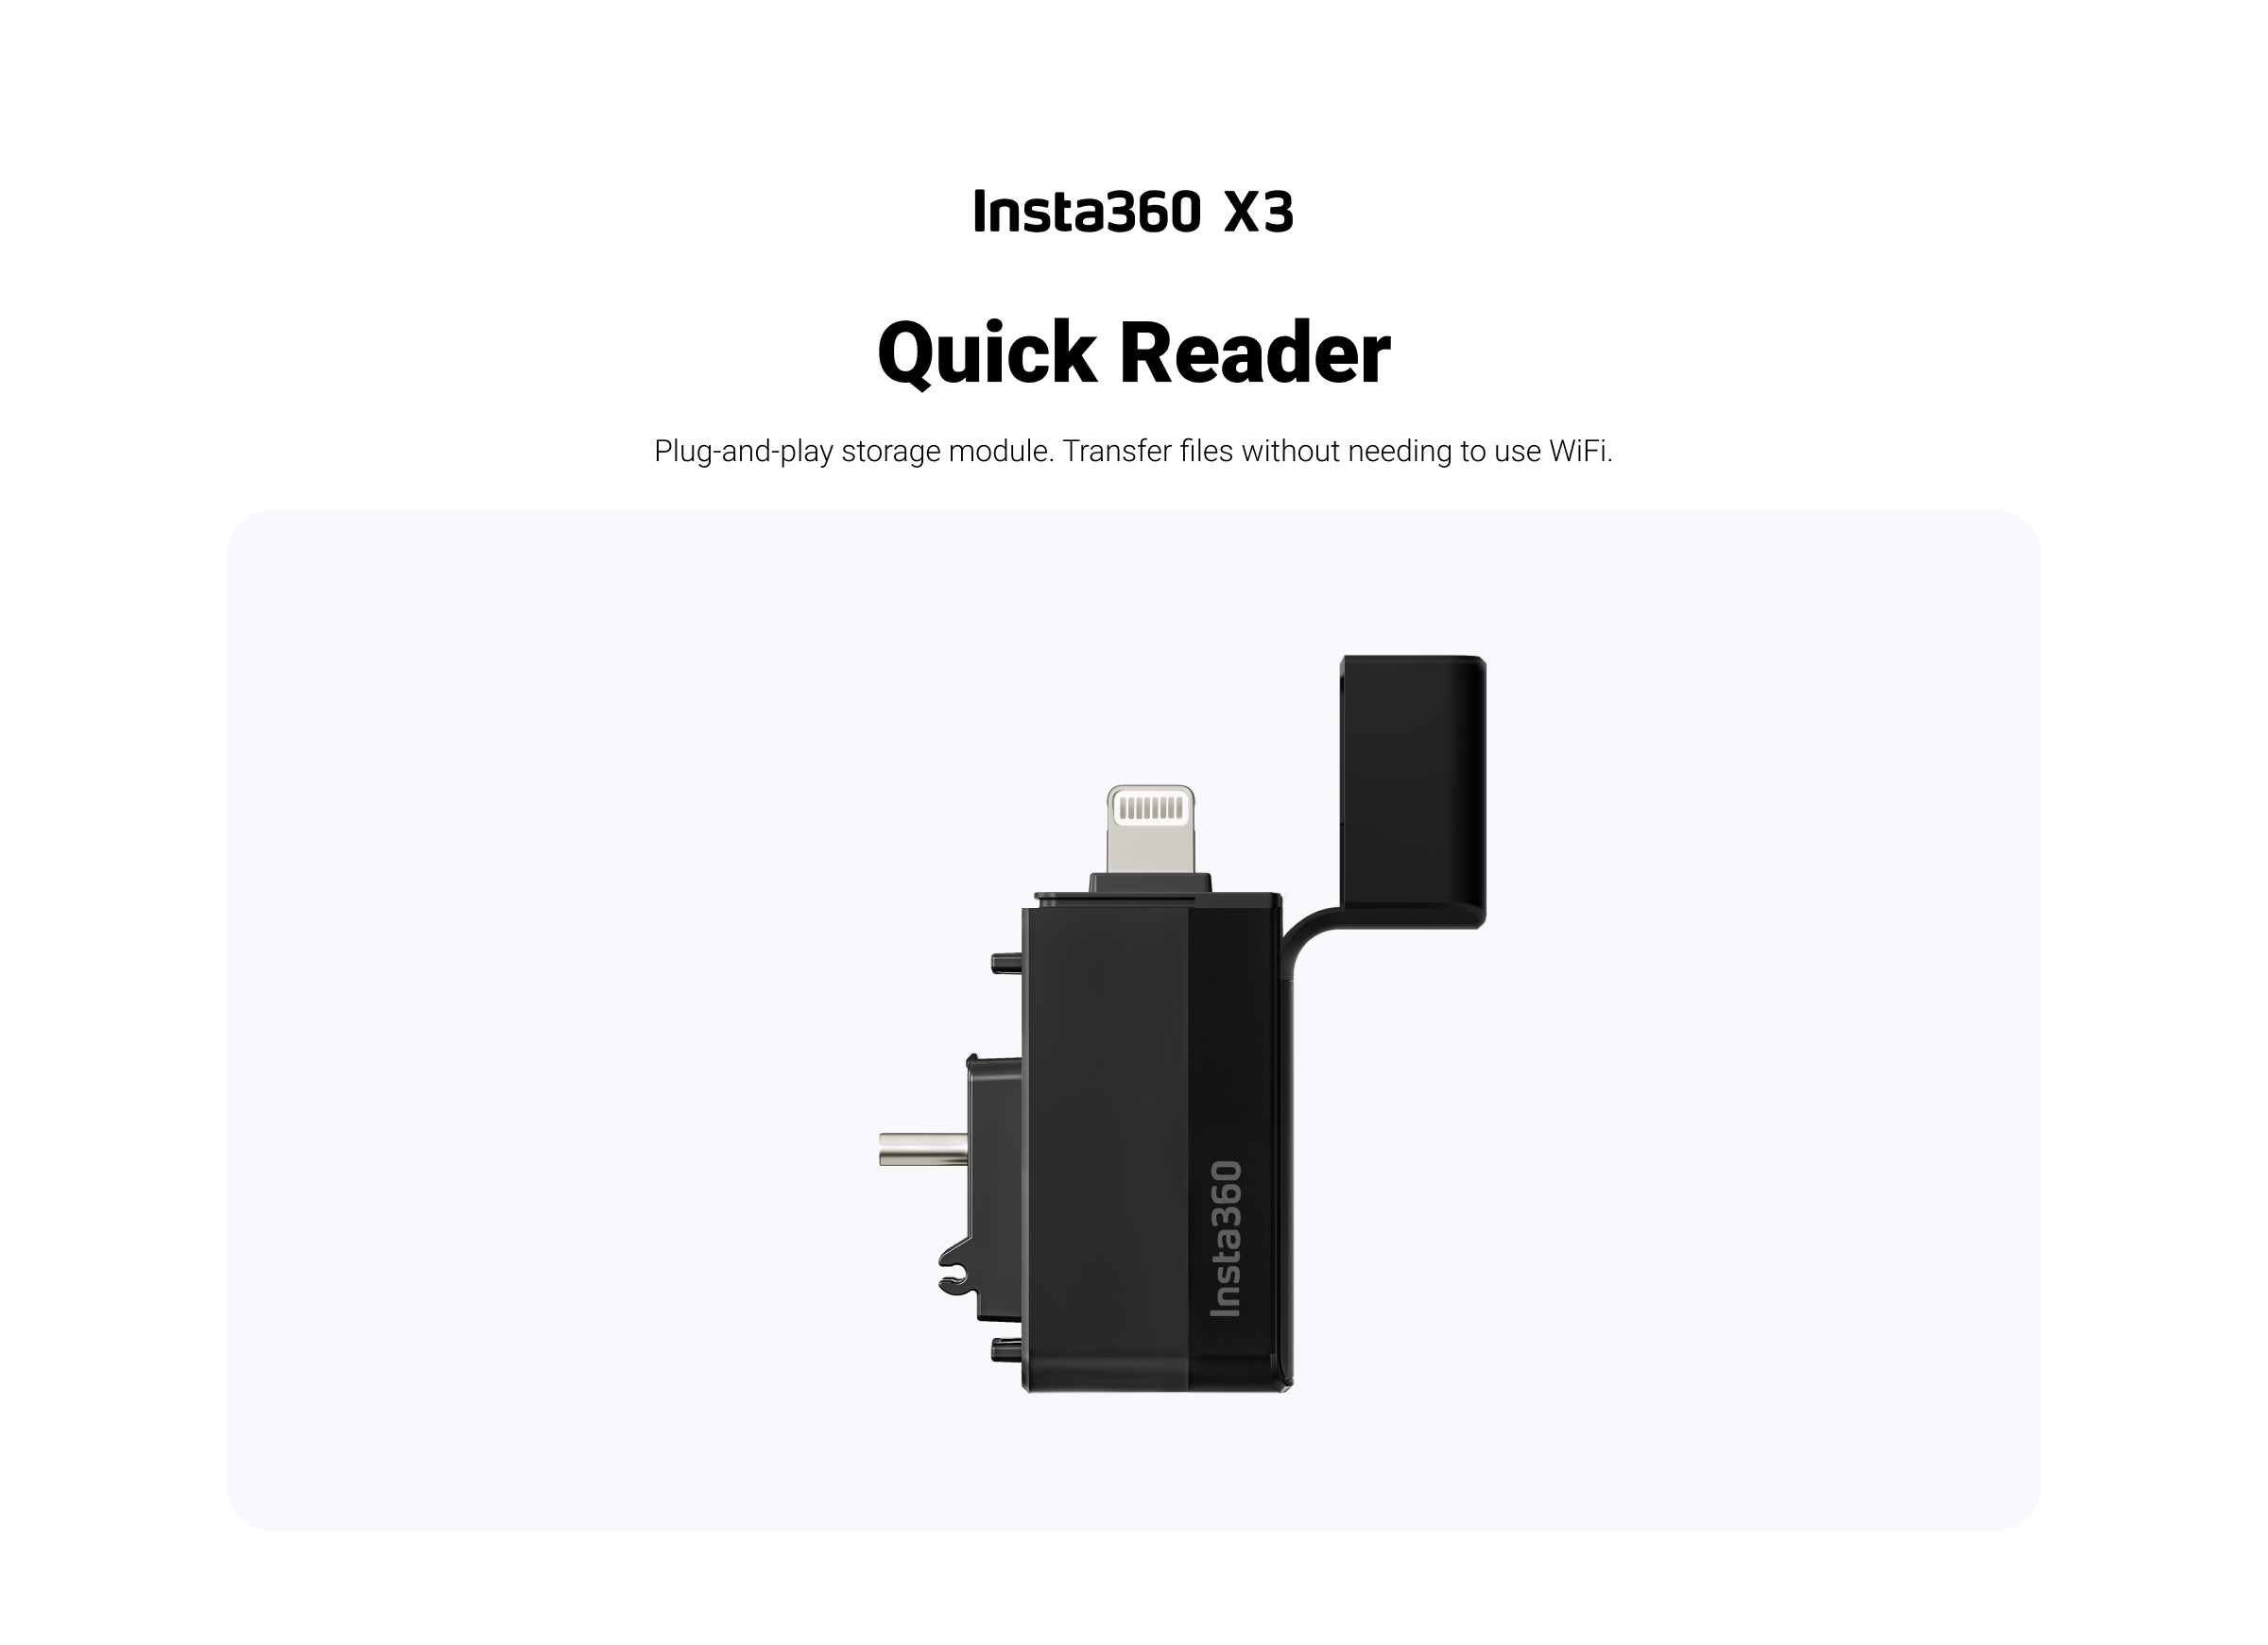 Insta360 X3 Quick Reader